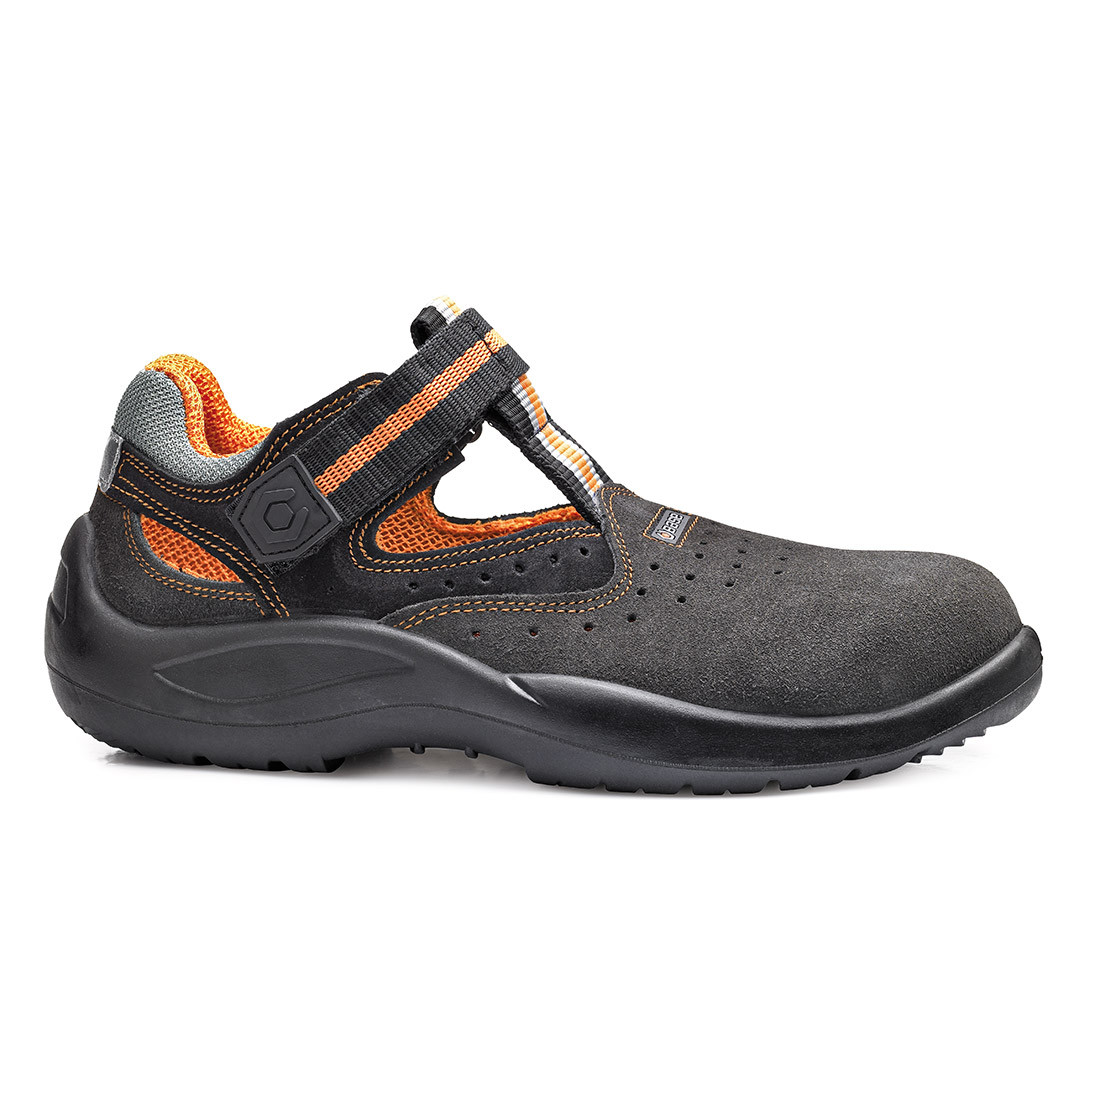 Summer Sandal S1P SRC - Les chaussures de protection